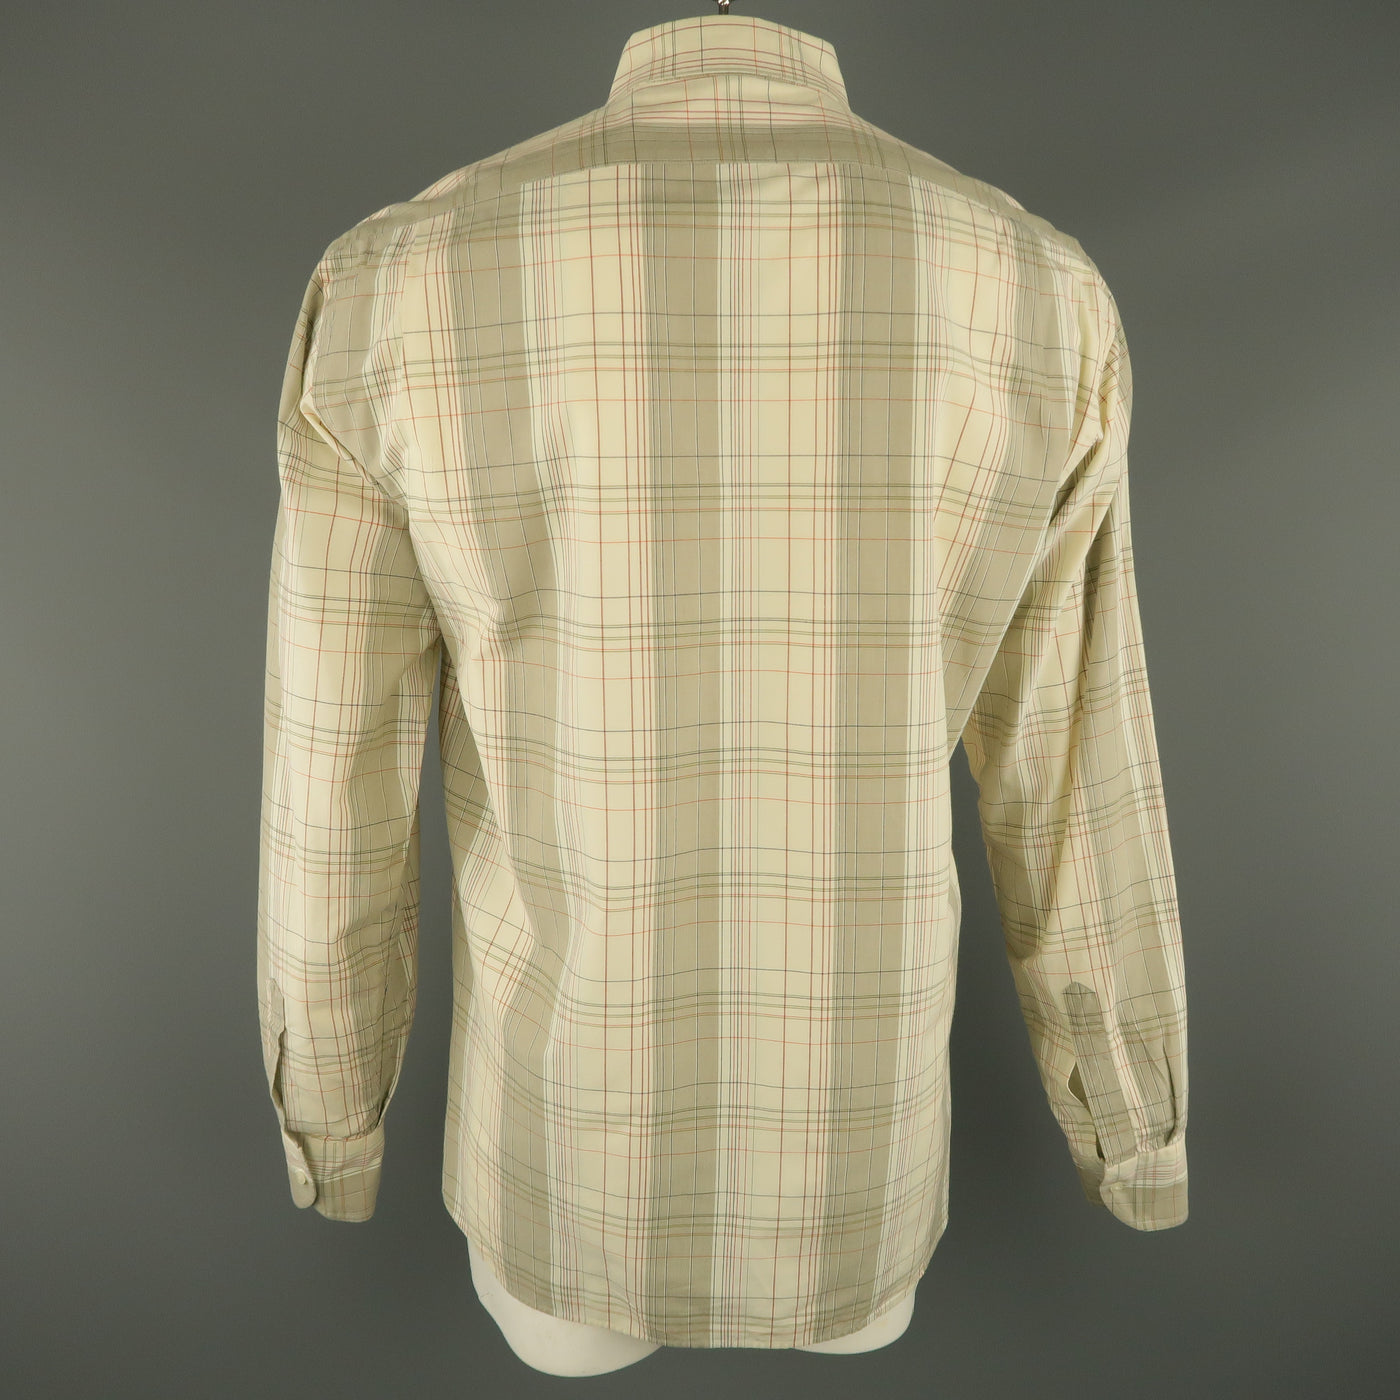 ADAM KIMMEL Size L Cream Plaid Cotton Button Up Long Sleeve Shirt